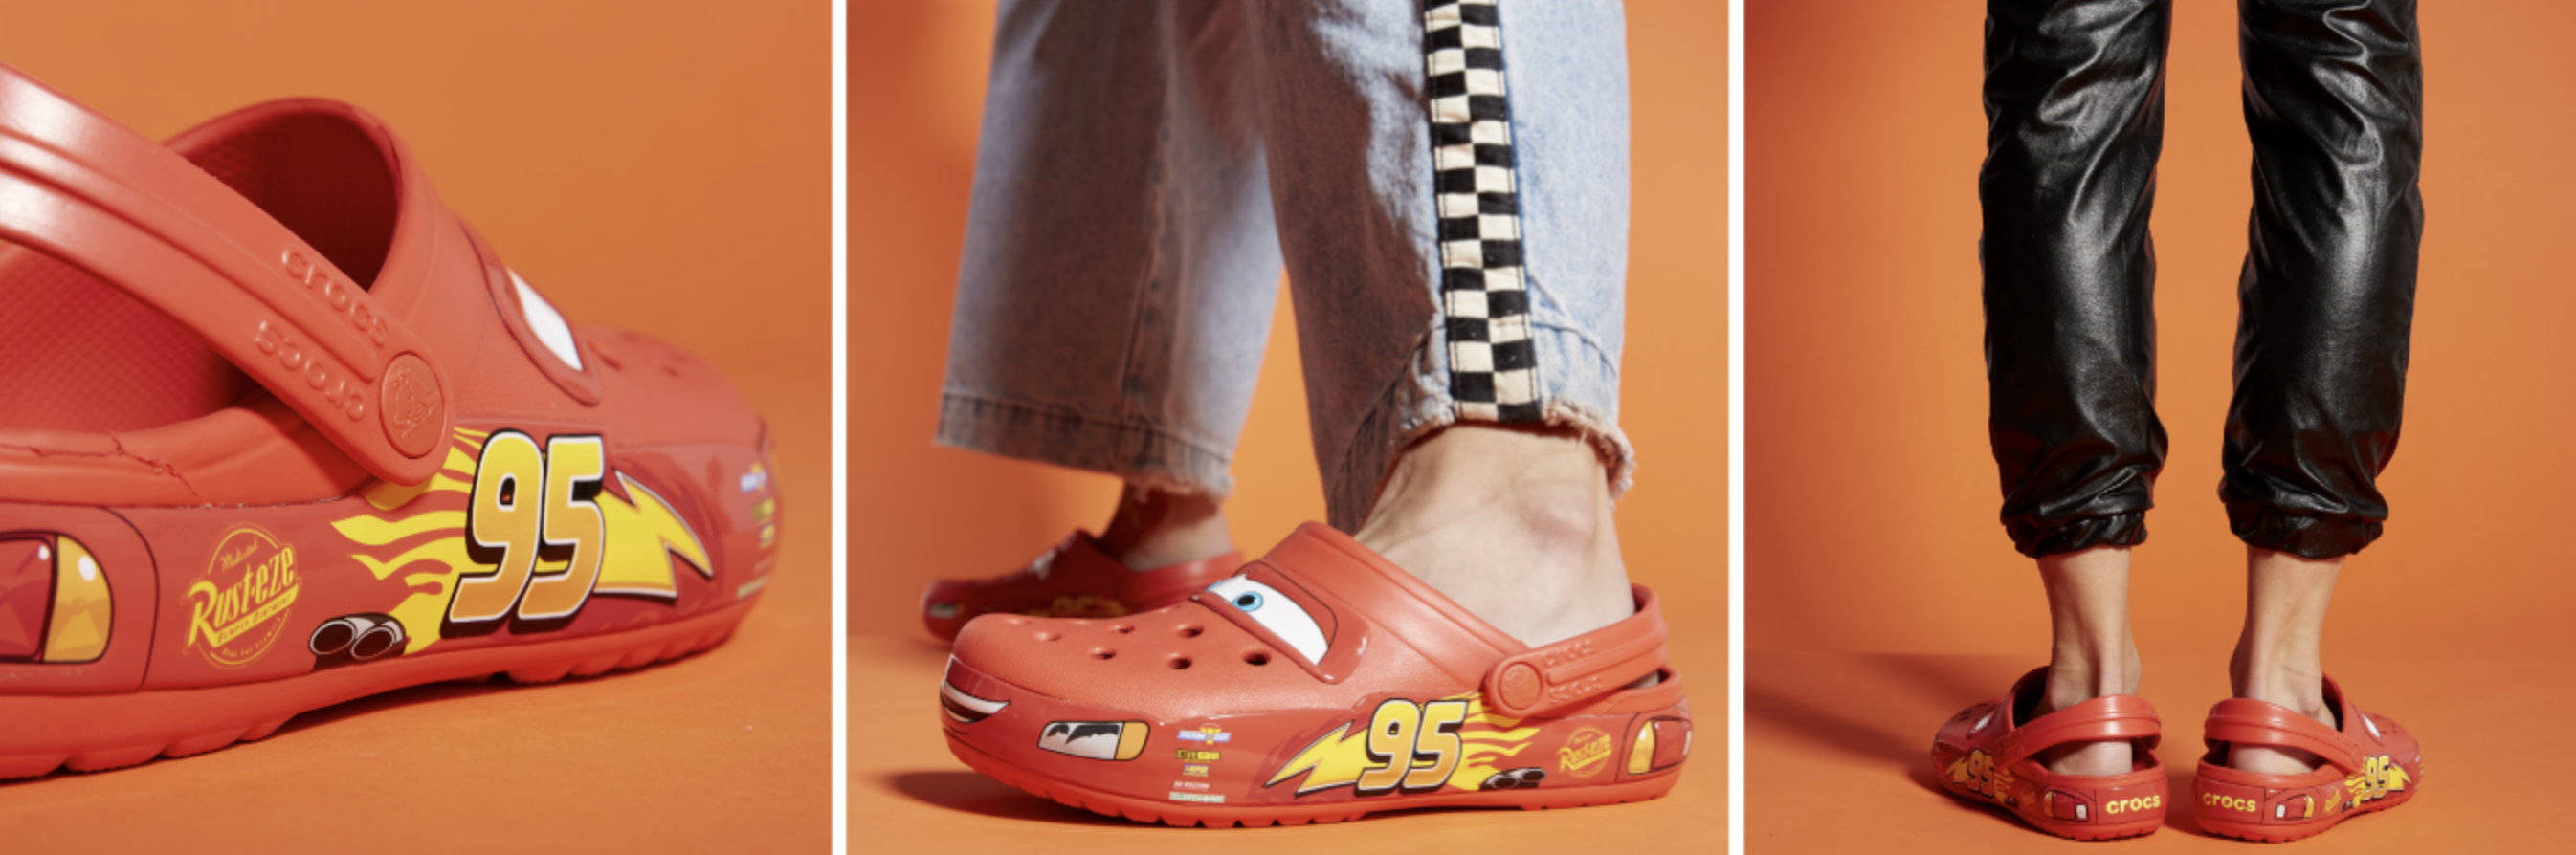 Lightning McQueen Crocs On Feet Review 